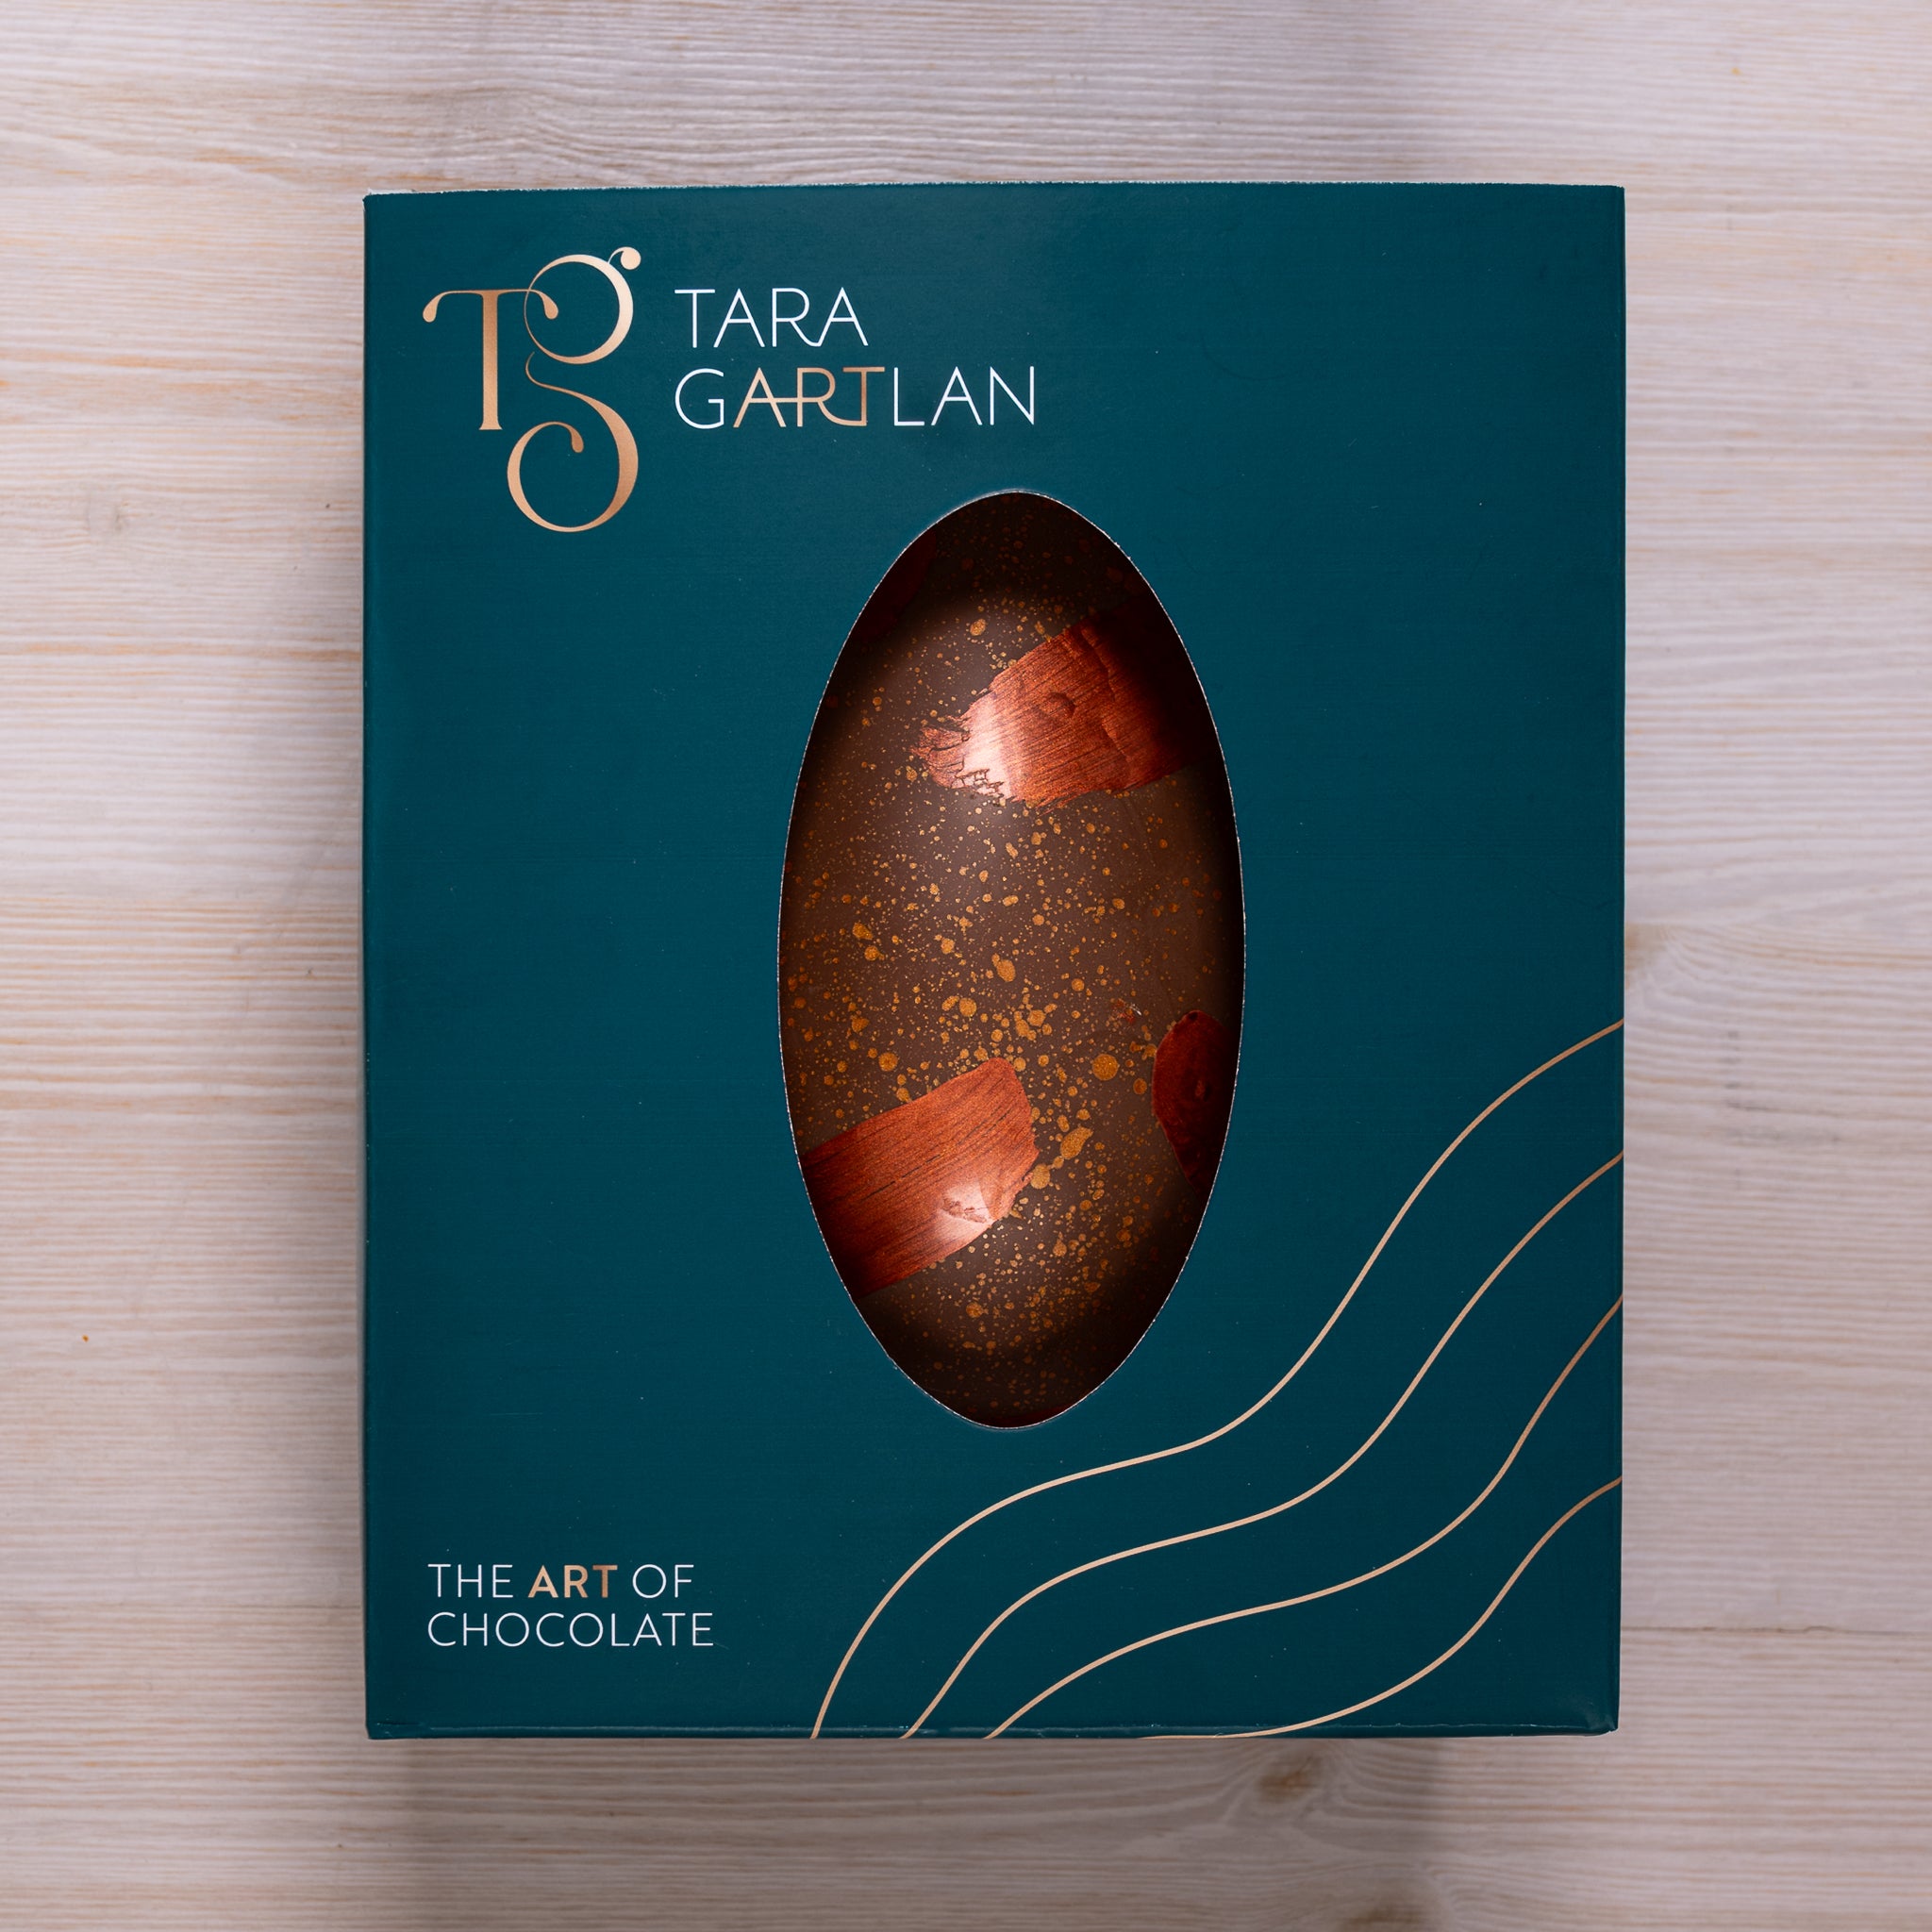 Hazelnut Rocher Easter Egg - PREORDER